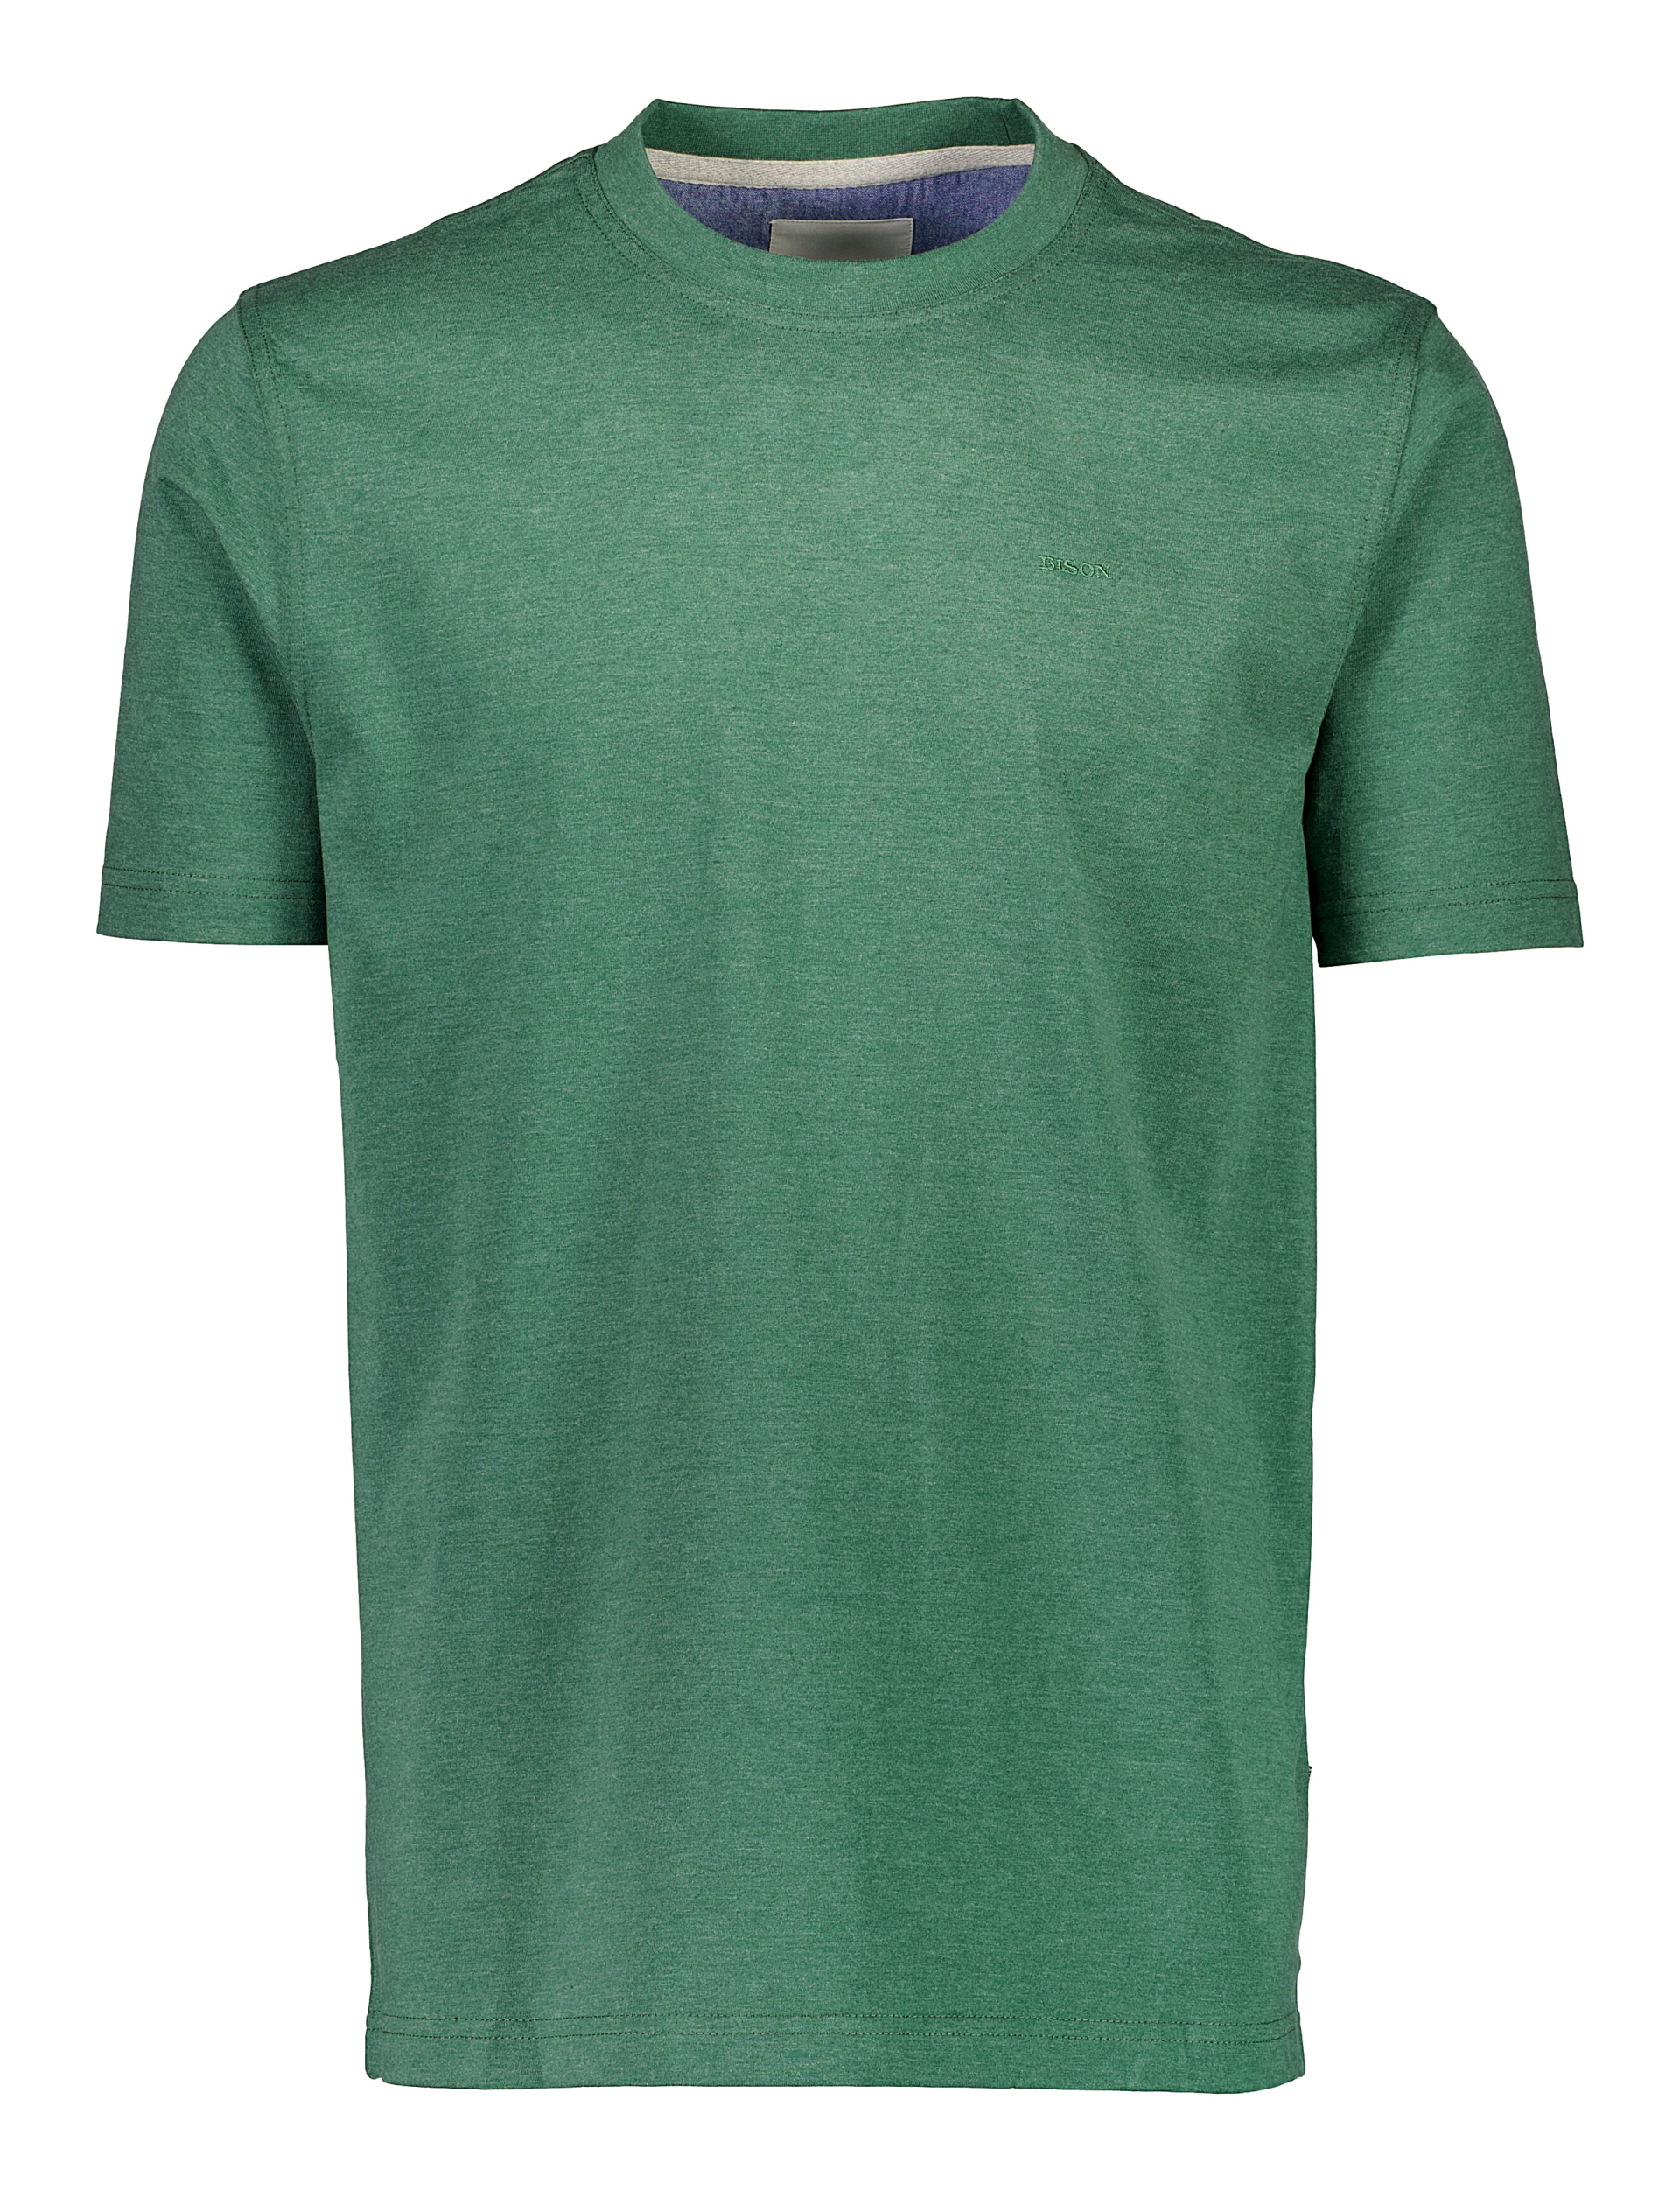 Bison T-shirt grøn / green mel